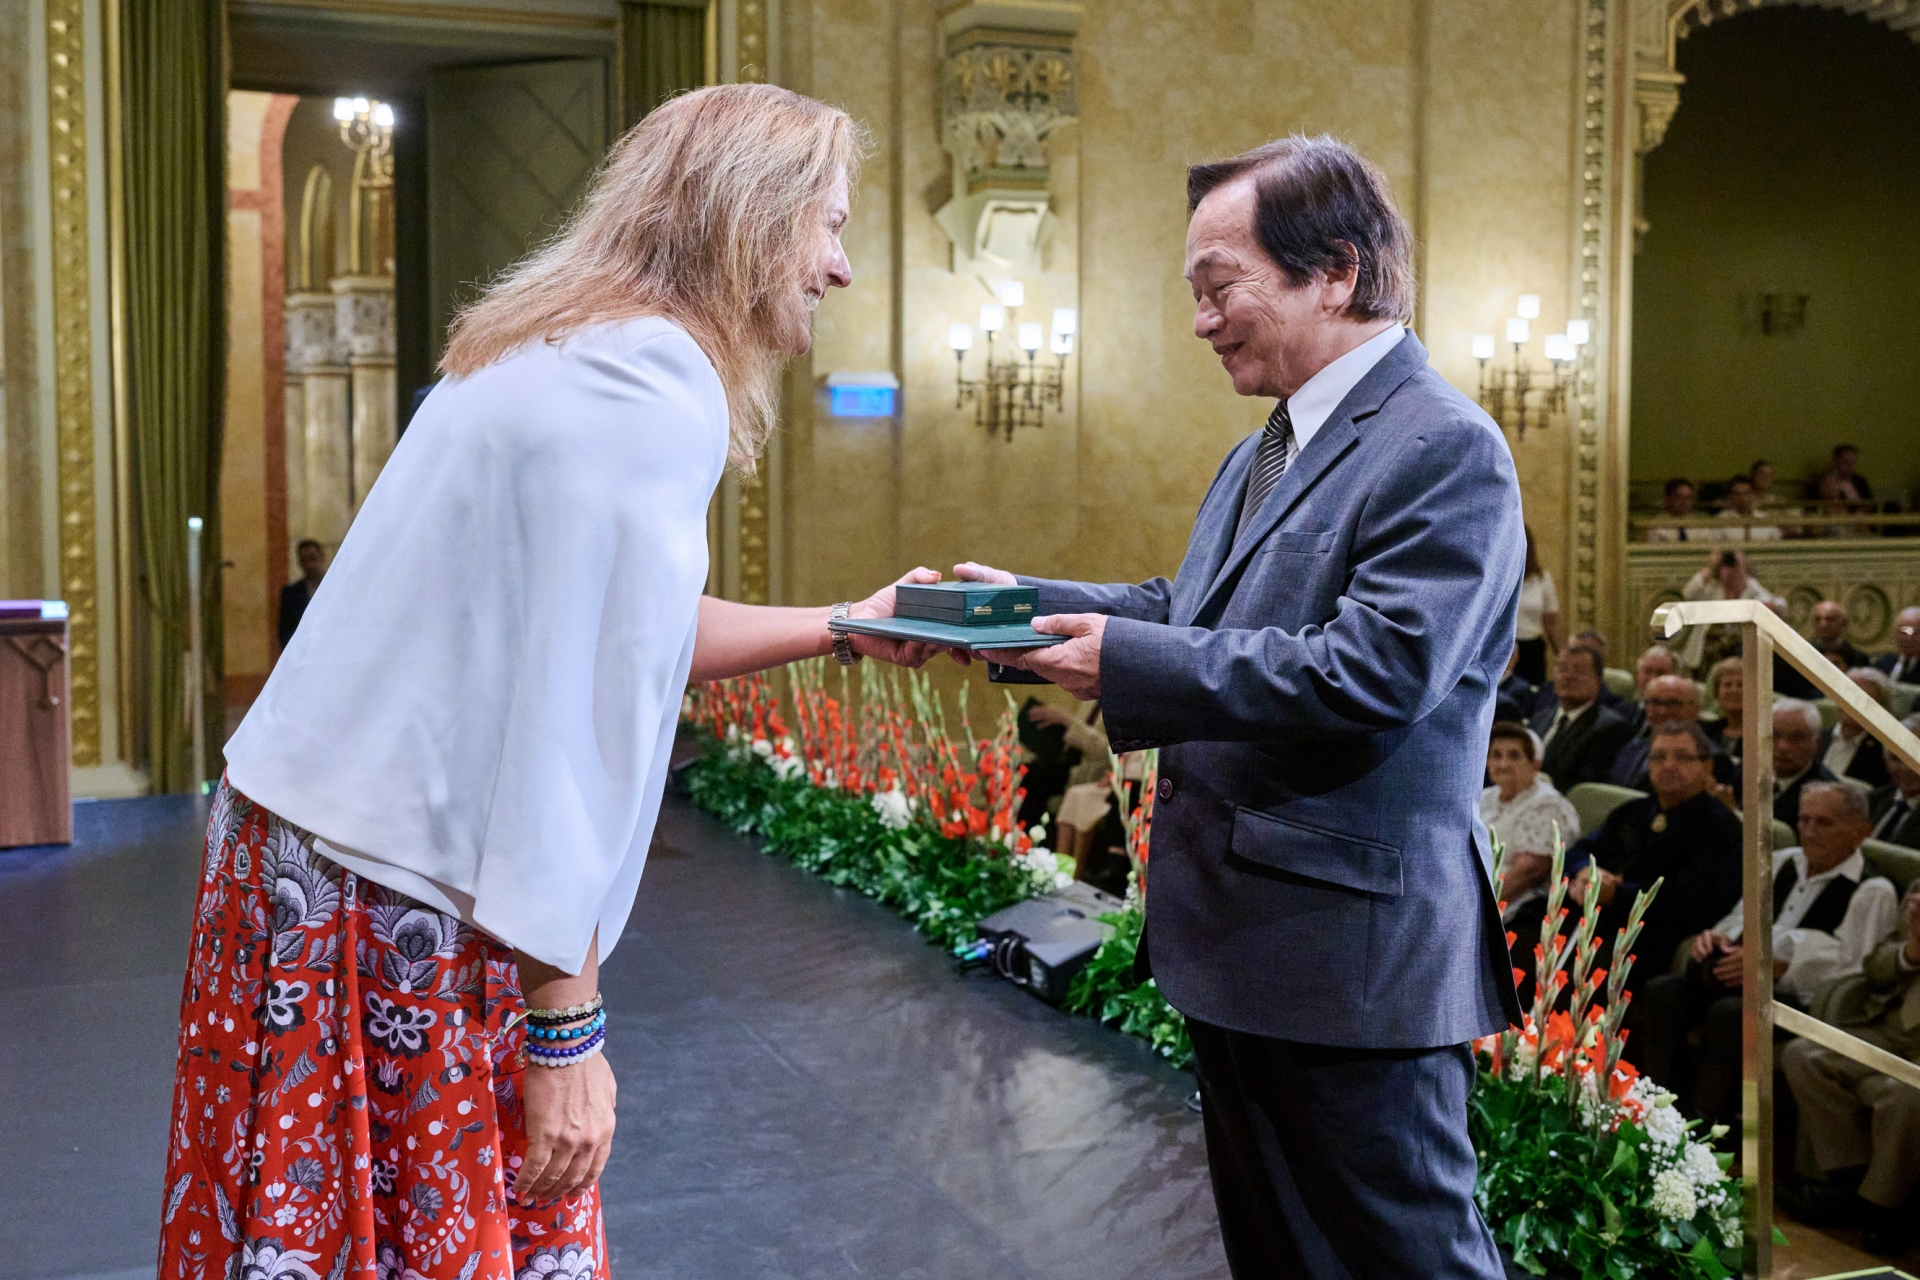 匈牙利越南裔知识分子裴明丰教授刚刚荣获匈牙利国家最高荣誉——匈牙利骑士十字勋章（Magyar Érdemrend Lovagkereszt）。该奖项旨在表彰教授在数学研究、科学合作和教育领域的贡献。